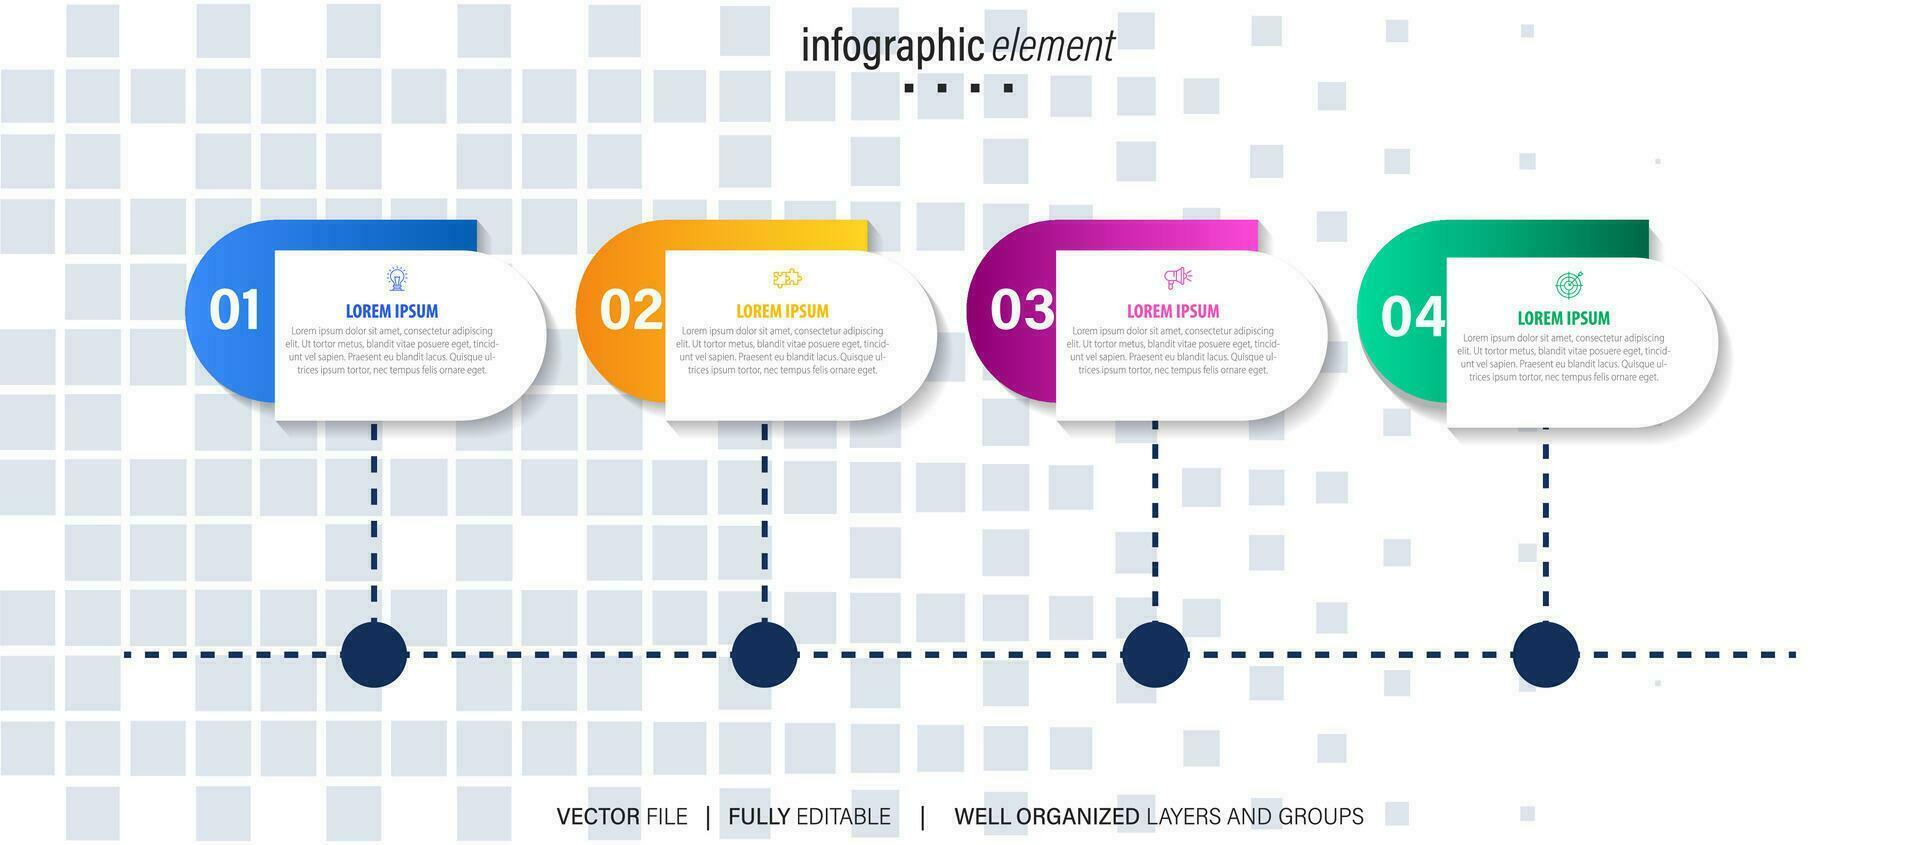 Business Road Map Timeline Infografik Icons für abstrakte Hintergrundvorlage Meilenstein Element moderne Diagramm Prozesstechnologie digitale Marketingdaten Präsentation Diagramm Vektor-Illustration vektor